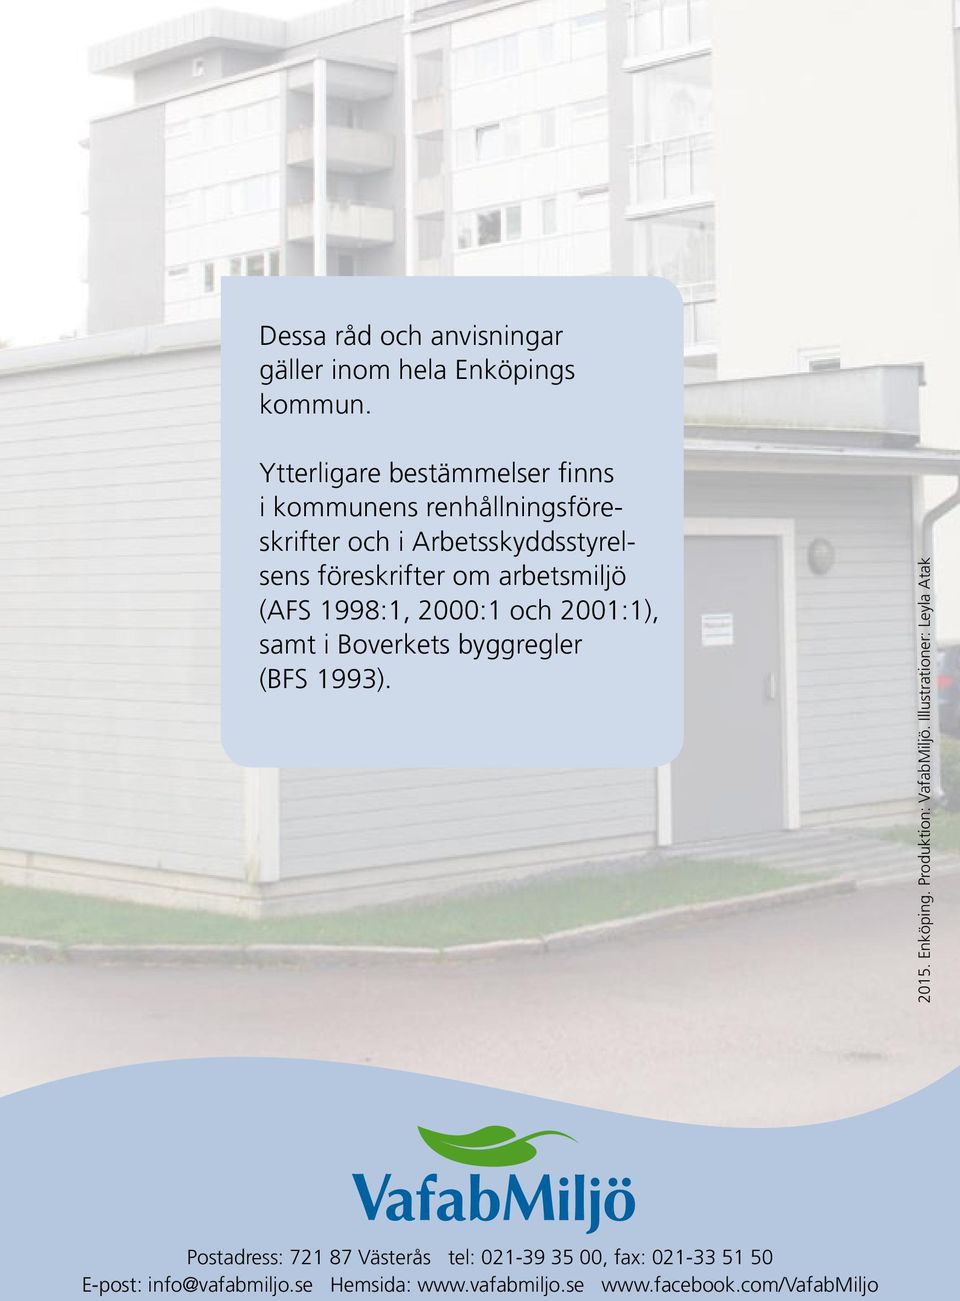 arbetsmiljö (AFS 1998:1, 2000:1 och 2001:1), samt i Boverkets byggregler (BFS 1993). 2015. Enköping.